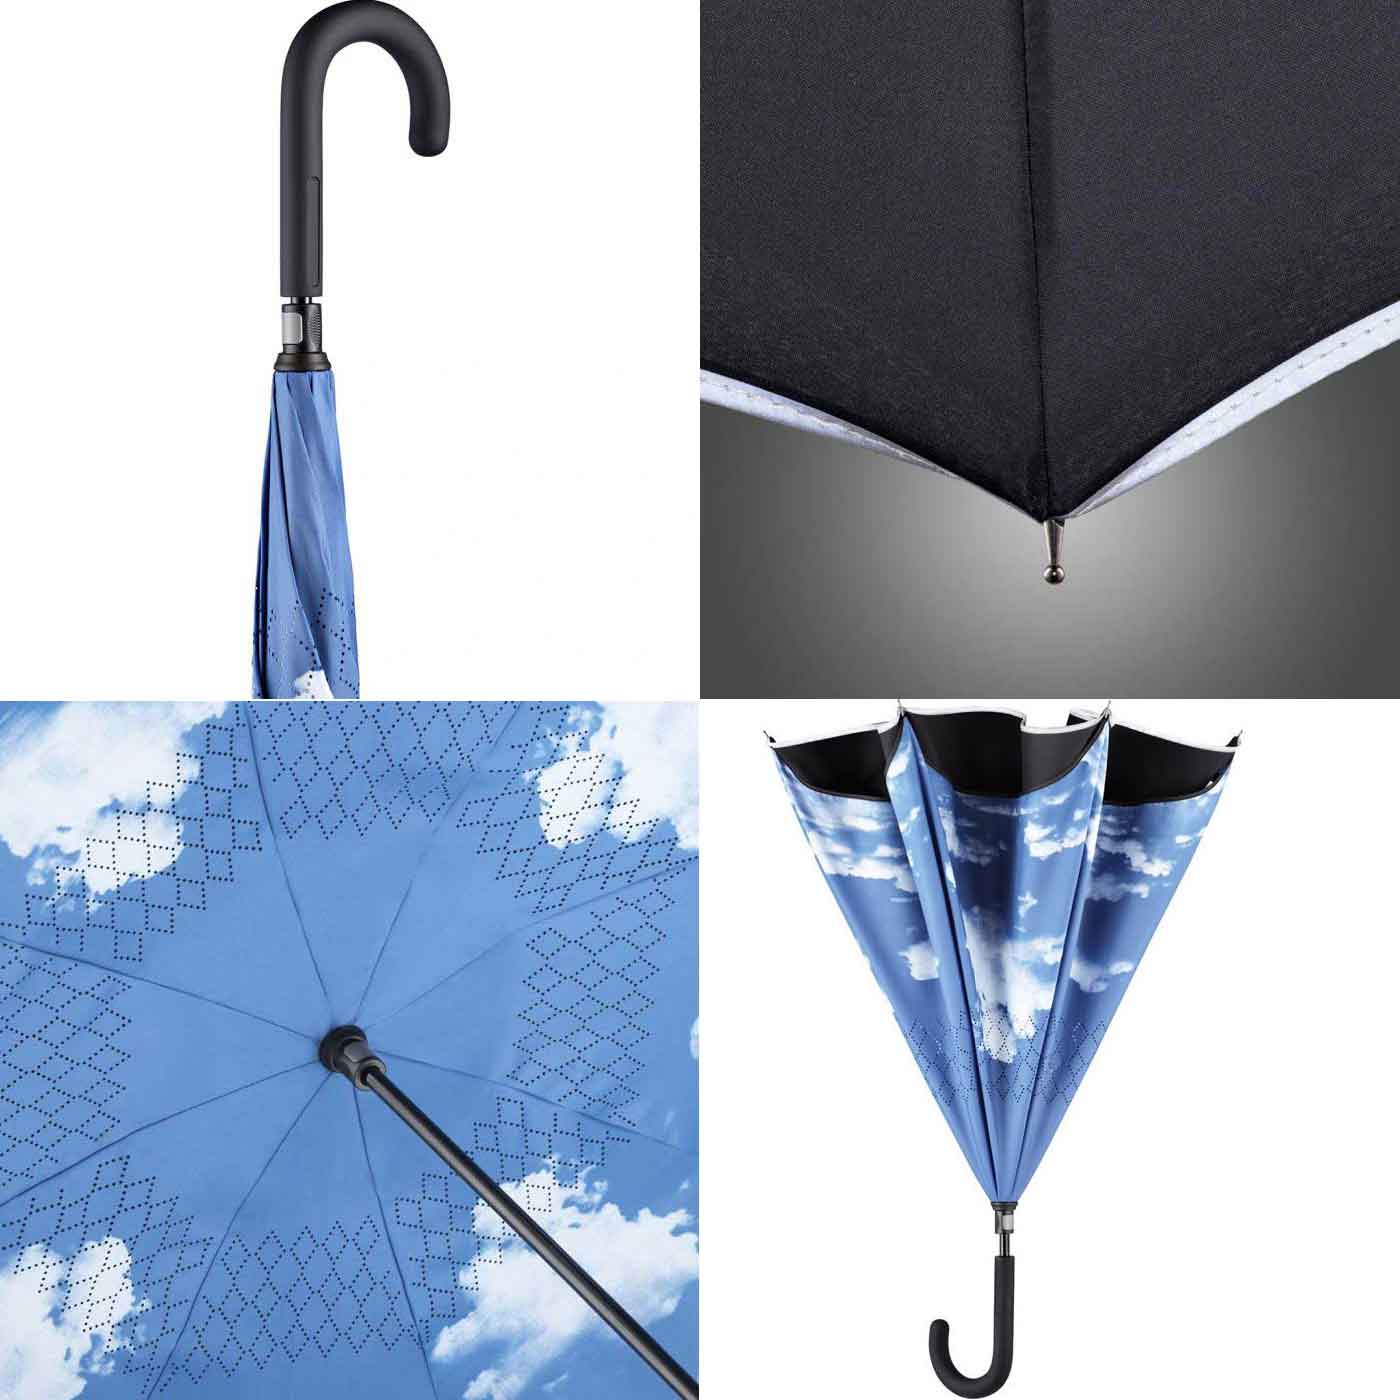 High quality umbrella